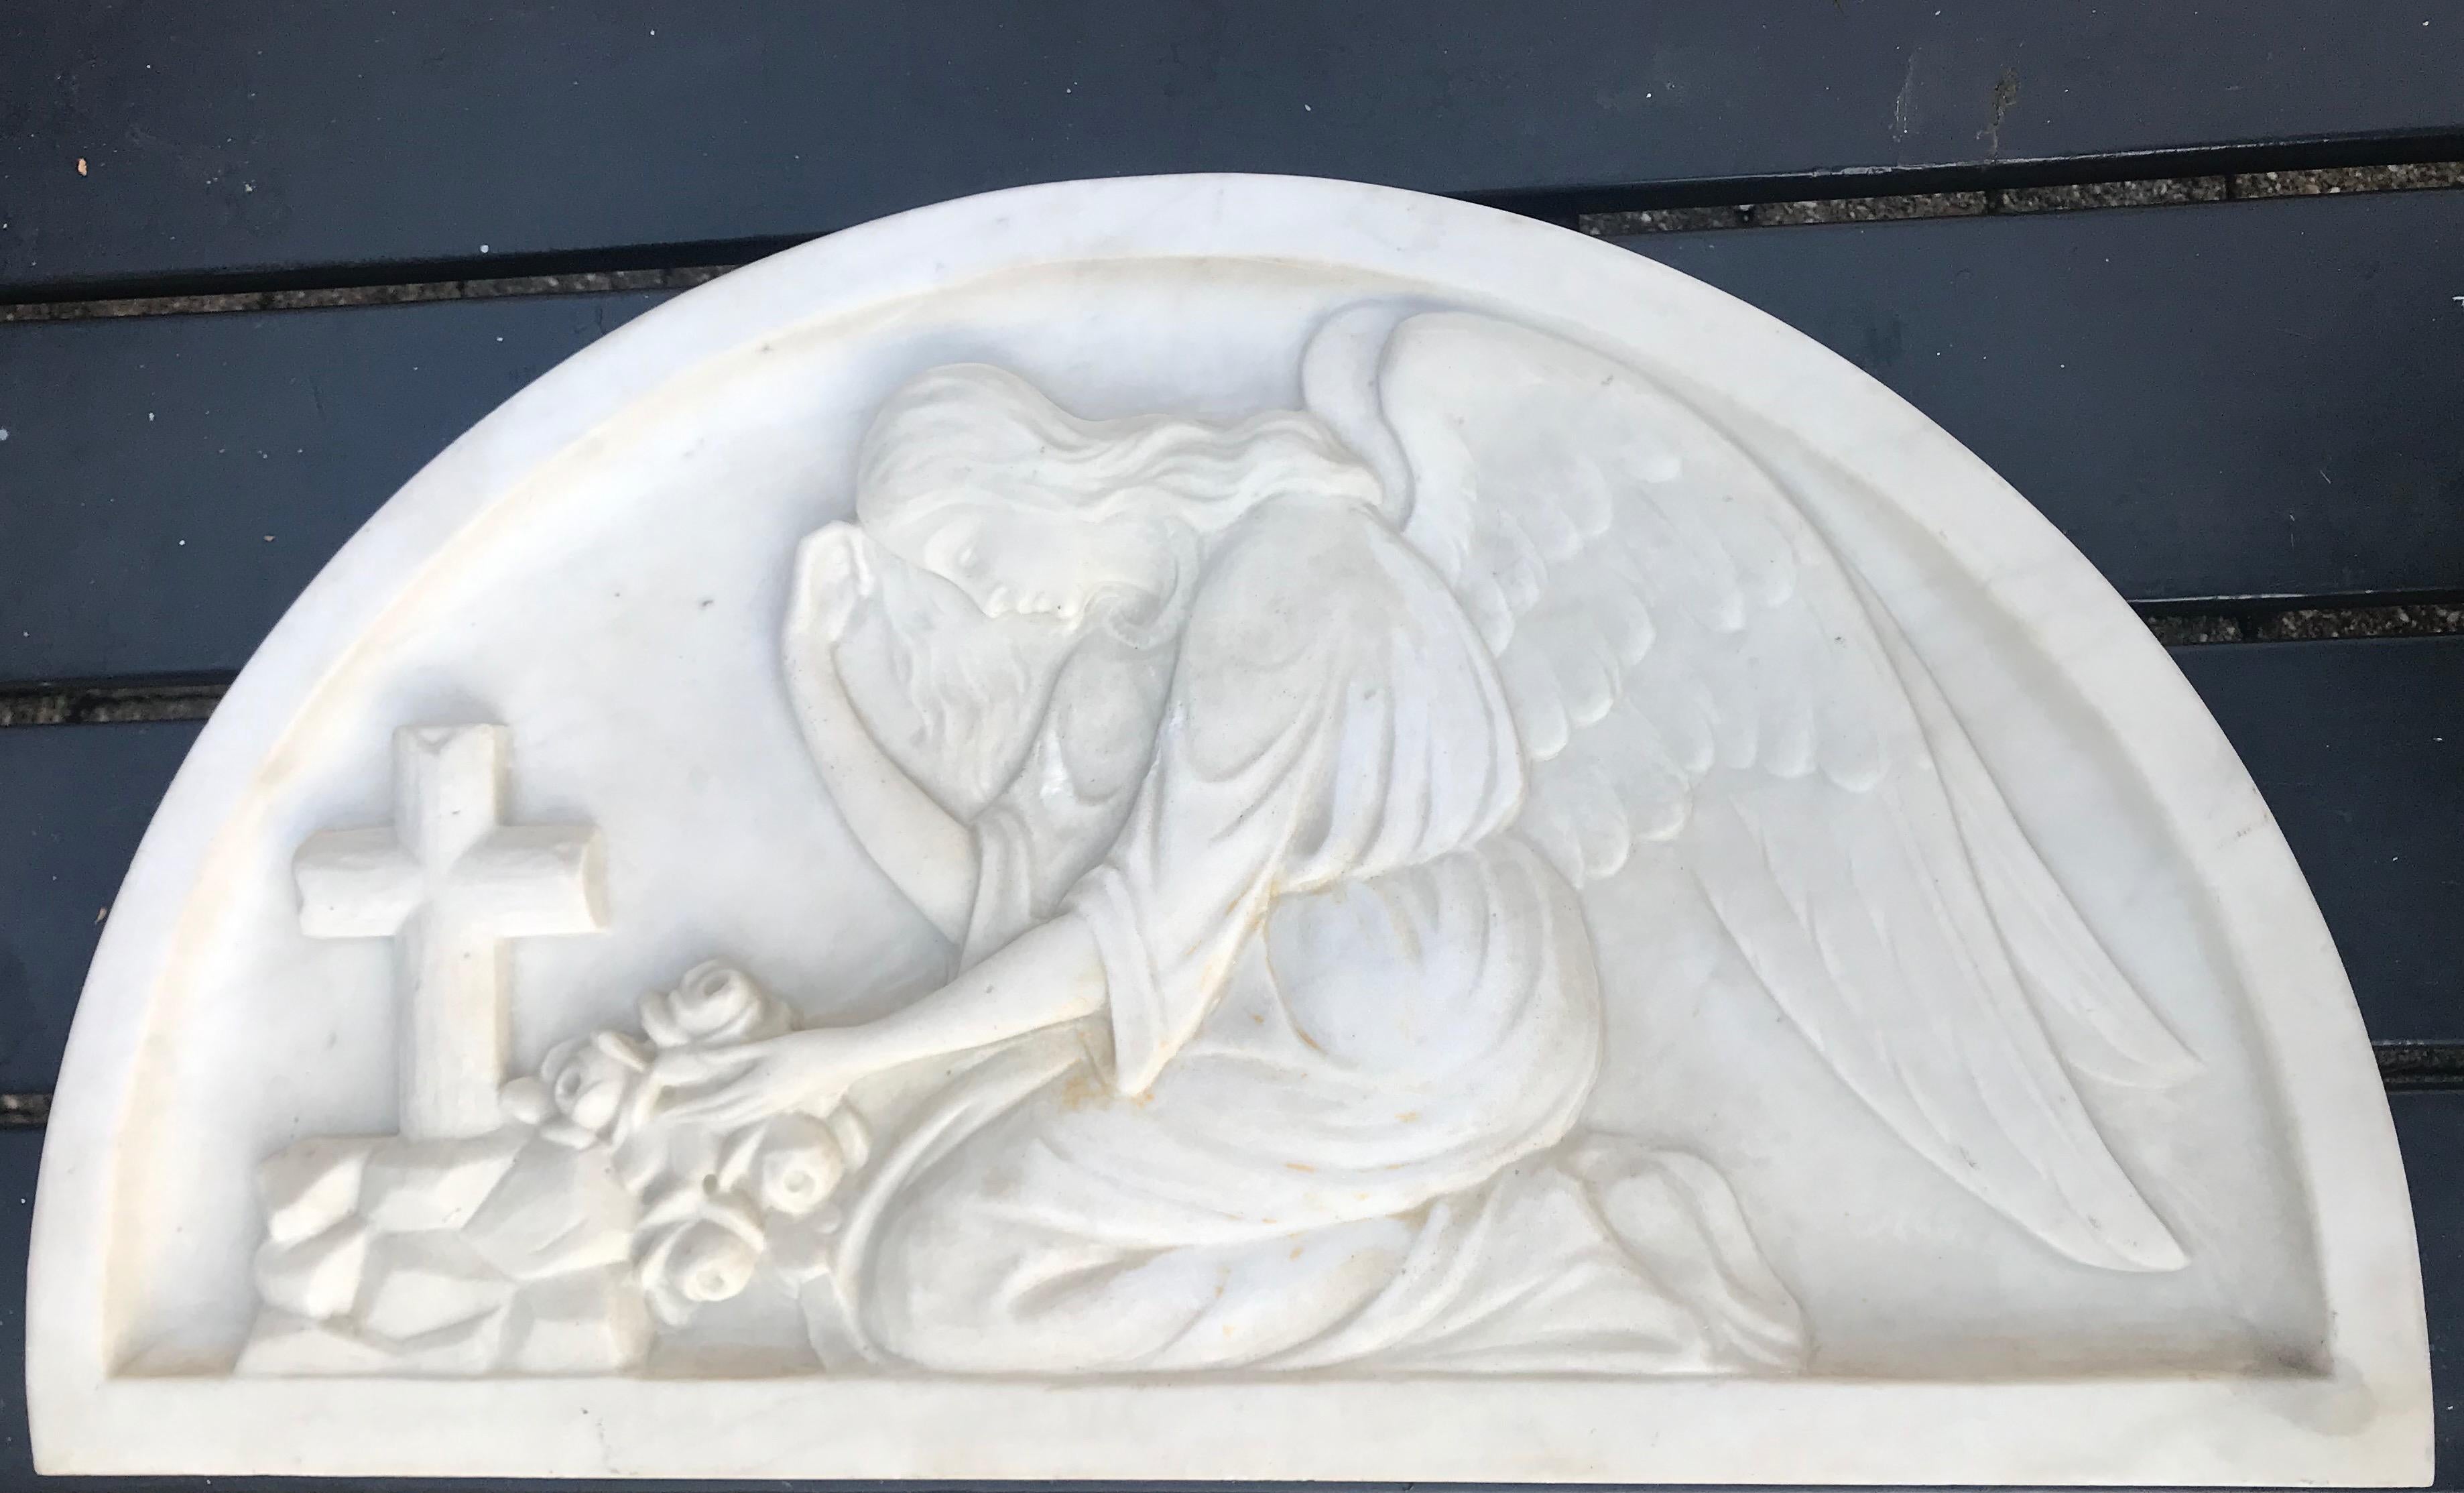 Handgeschnitzter kniender Engel in Relief. Markiertes/unterschriebenes Bild 4.

Dieser trauernde Engel an einem Grab ist vollständig aus Marmor handgeschnitzt. Dieses christliche Kunstwerk aus dem frühen 20. Jahrhundert kann an der Wand hängend oder